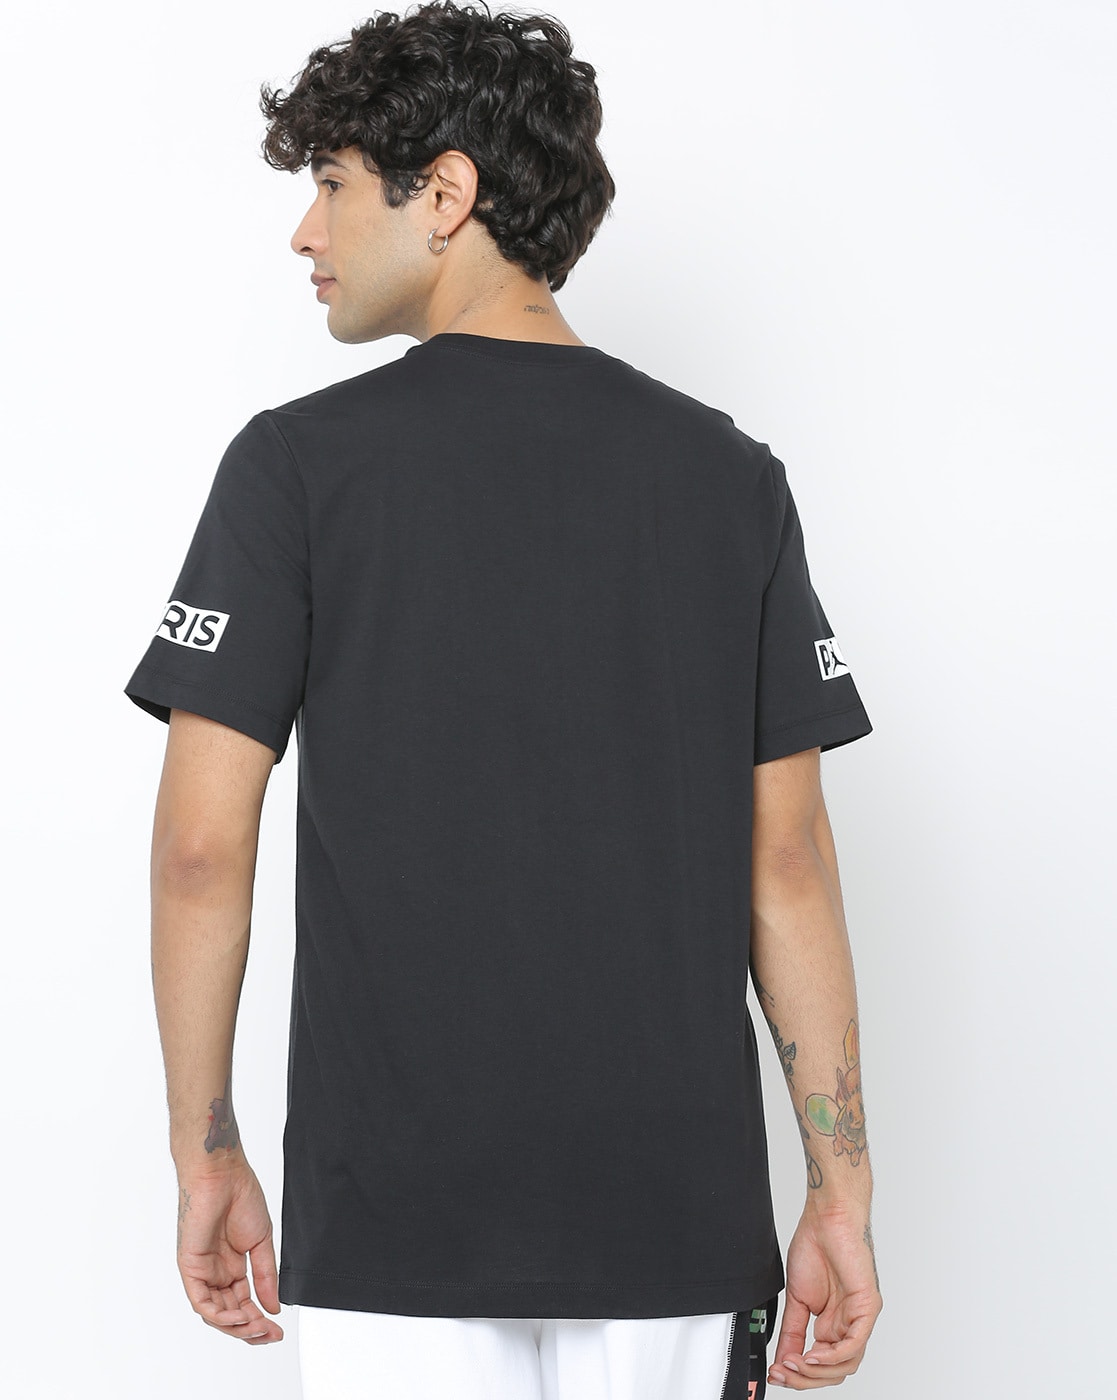 Buy Black Tshirts For Men By Nike Online Ajio Com